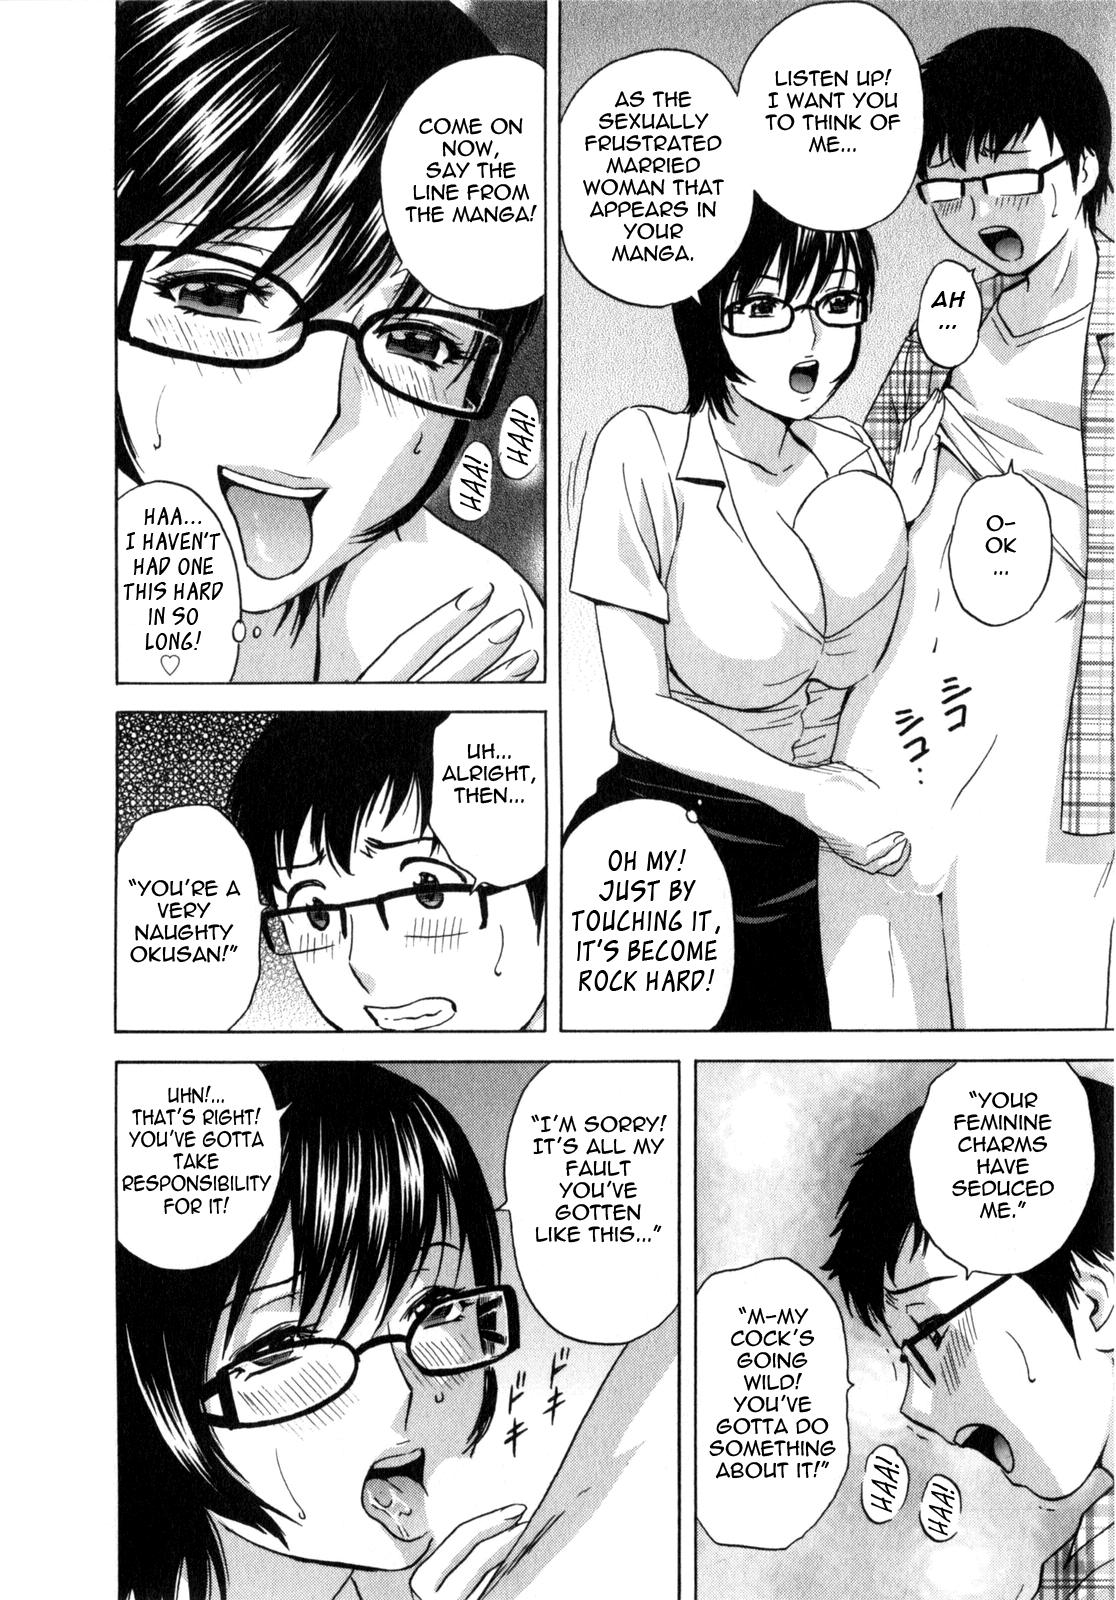 Manga no youna Hitozuma to no Hibi - Days with Married Women such as Comics. 106